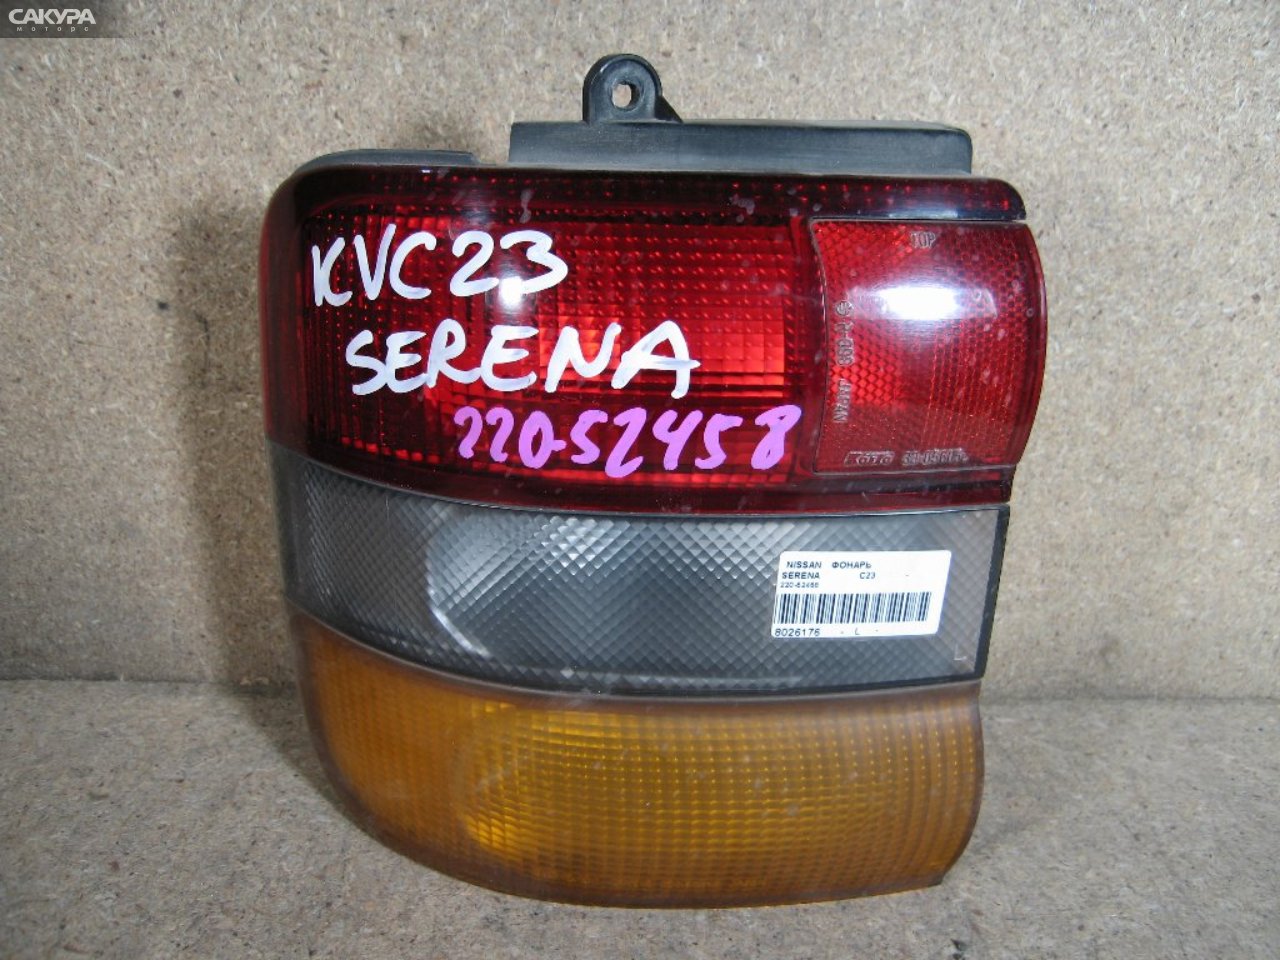 Фонарь стоп-сигнала левый Nissan Serena KBC23 220-52458: купить в Сакура Абакан.